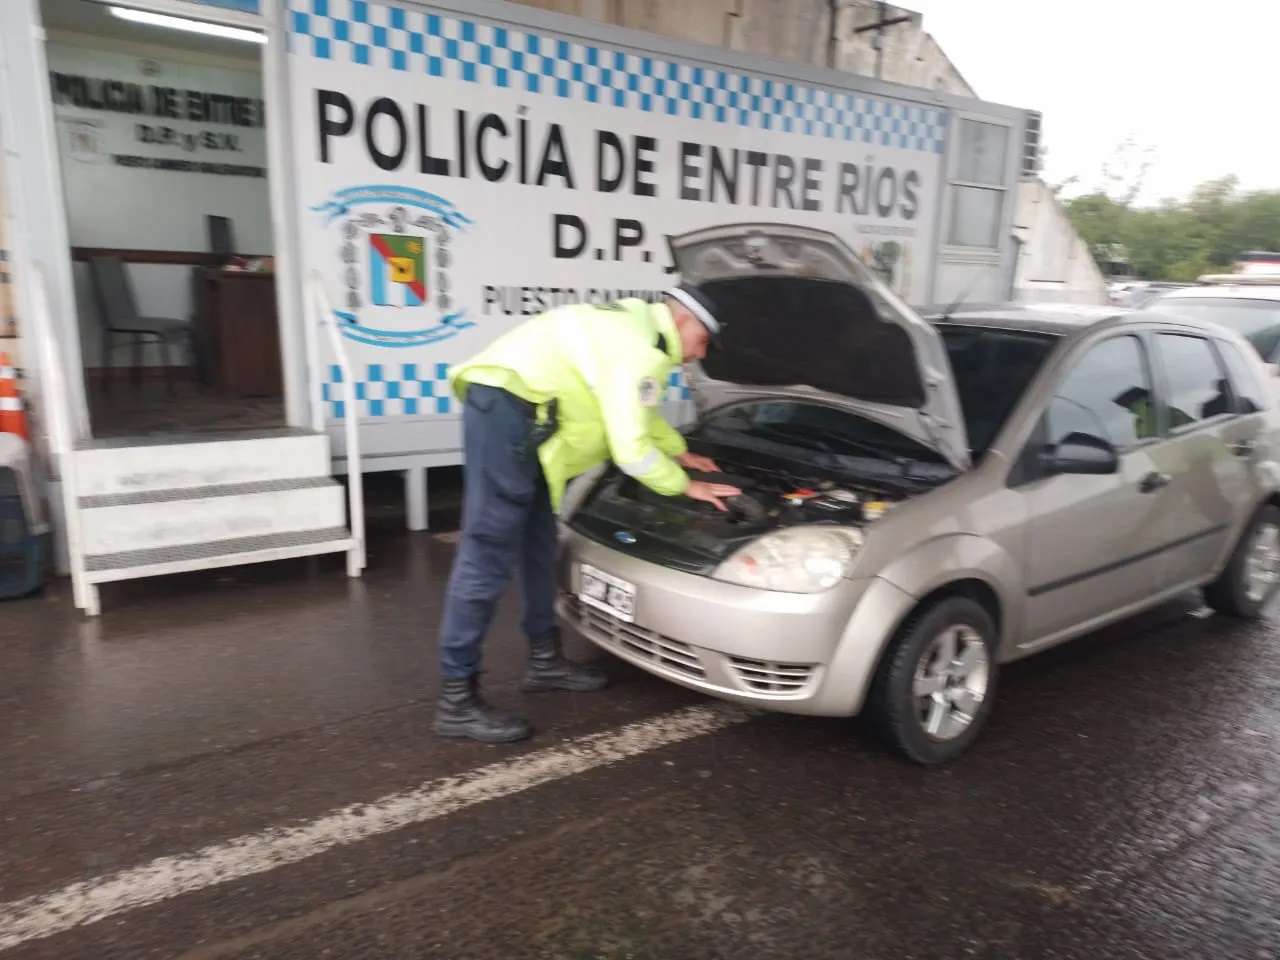 La Policía vial secuestró un vehículo con papeles “truchos”